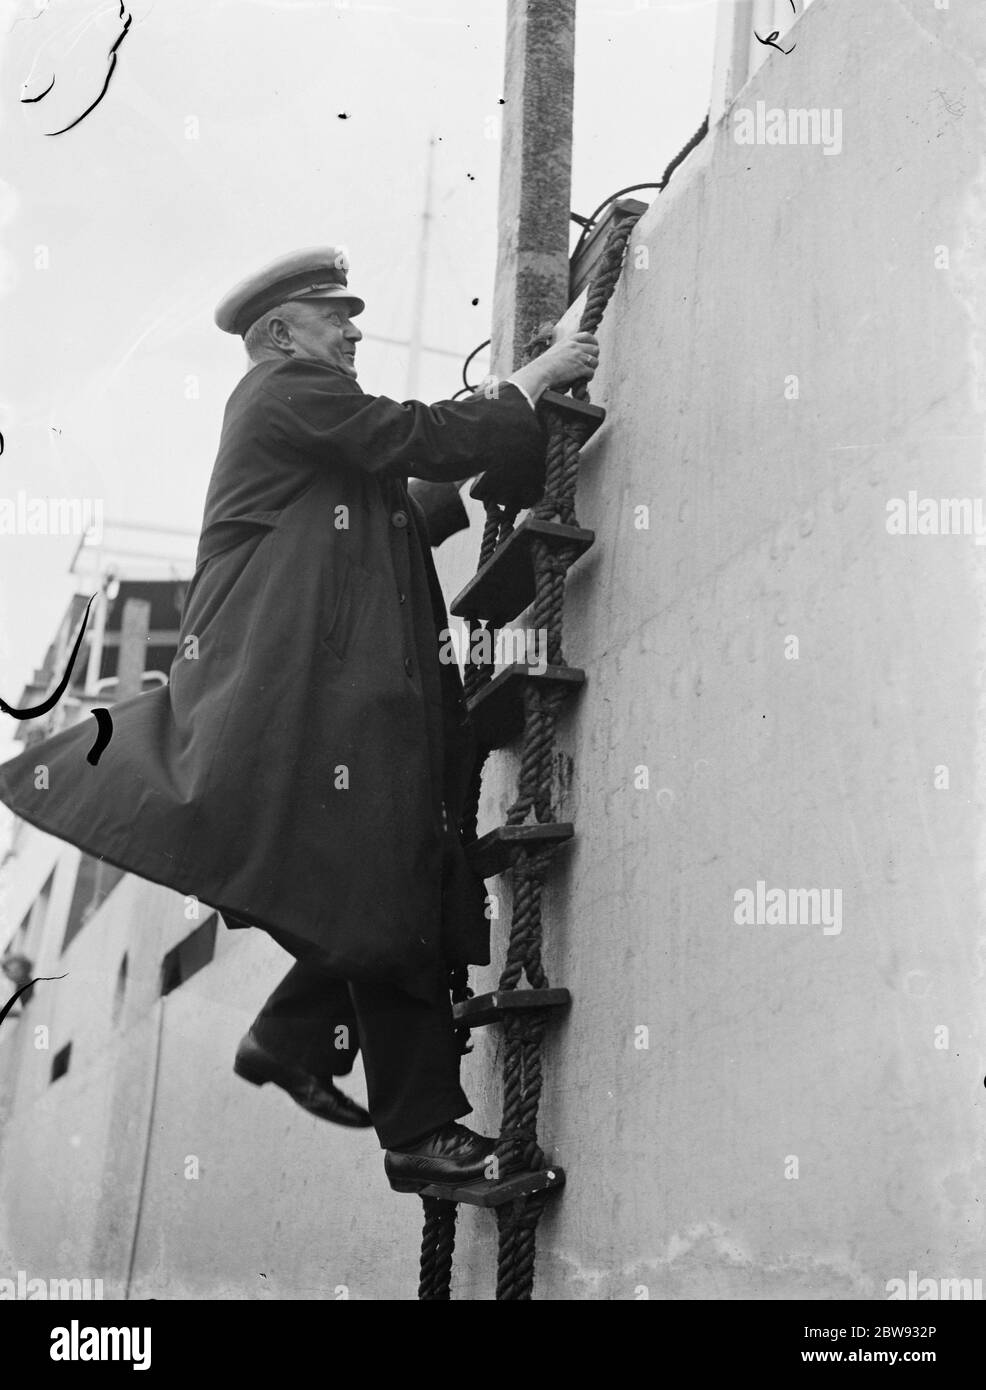 Thames Piloten in Gravesend, Kent, die Schiffen helfen, durch die verstopften Gewässer des Hafens zu navigieren. W Simmonds Clibing an Bord eines Schiffes . 1939 Stockfoto